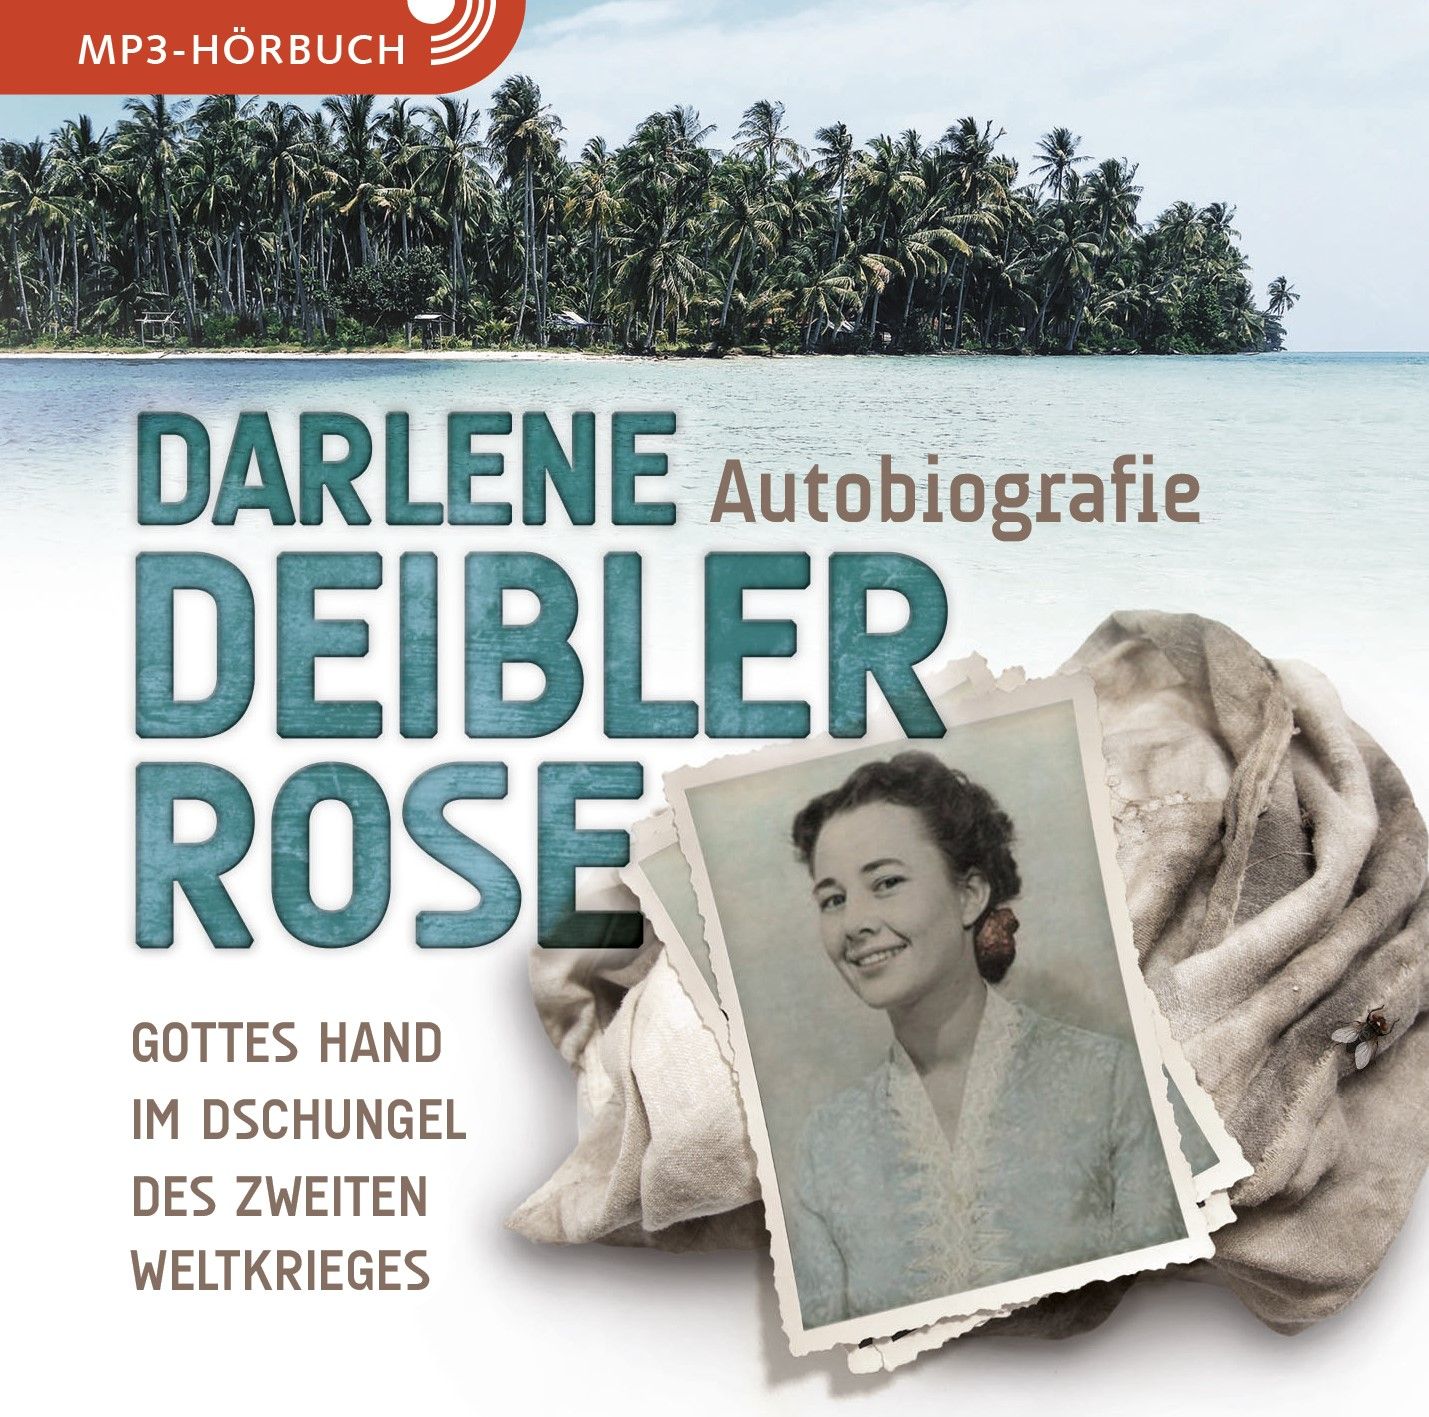 Darlene Deibler Rose - Autobiografie - Gottes Hand im Dschungel des Zweiten Weltkrieges (Hörbuch [MP3])